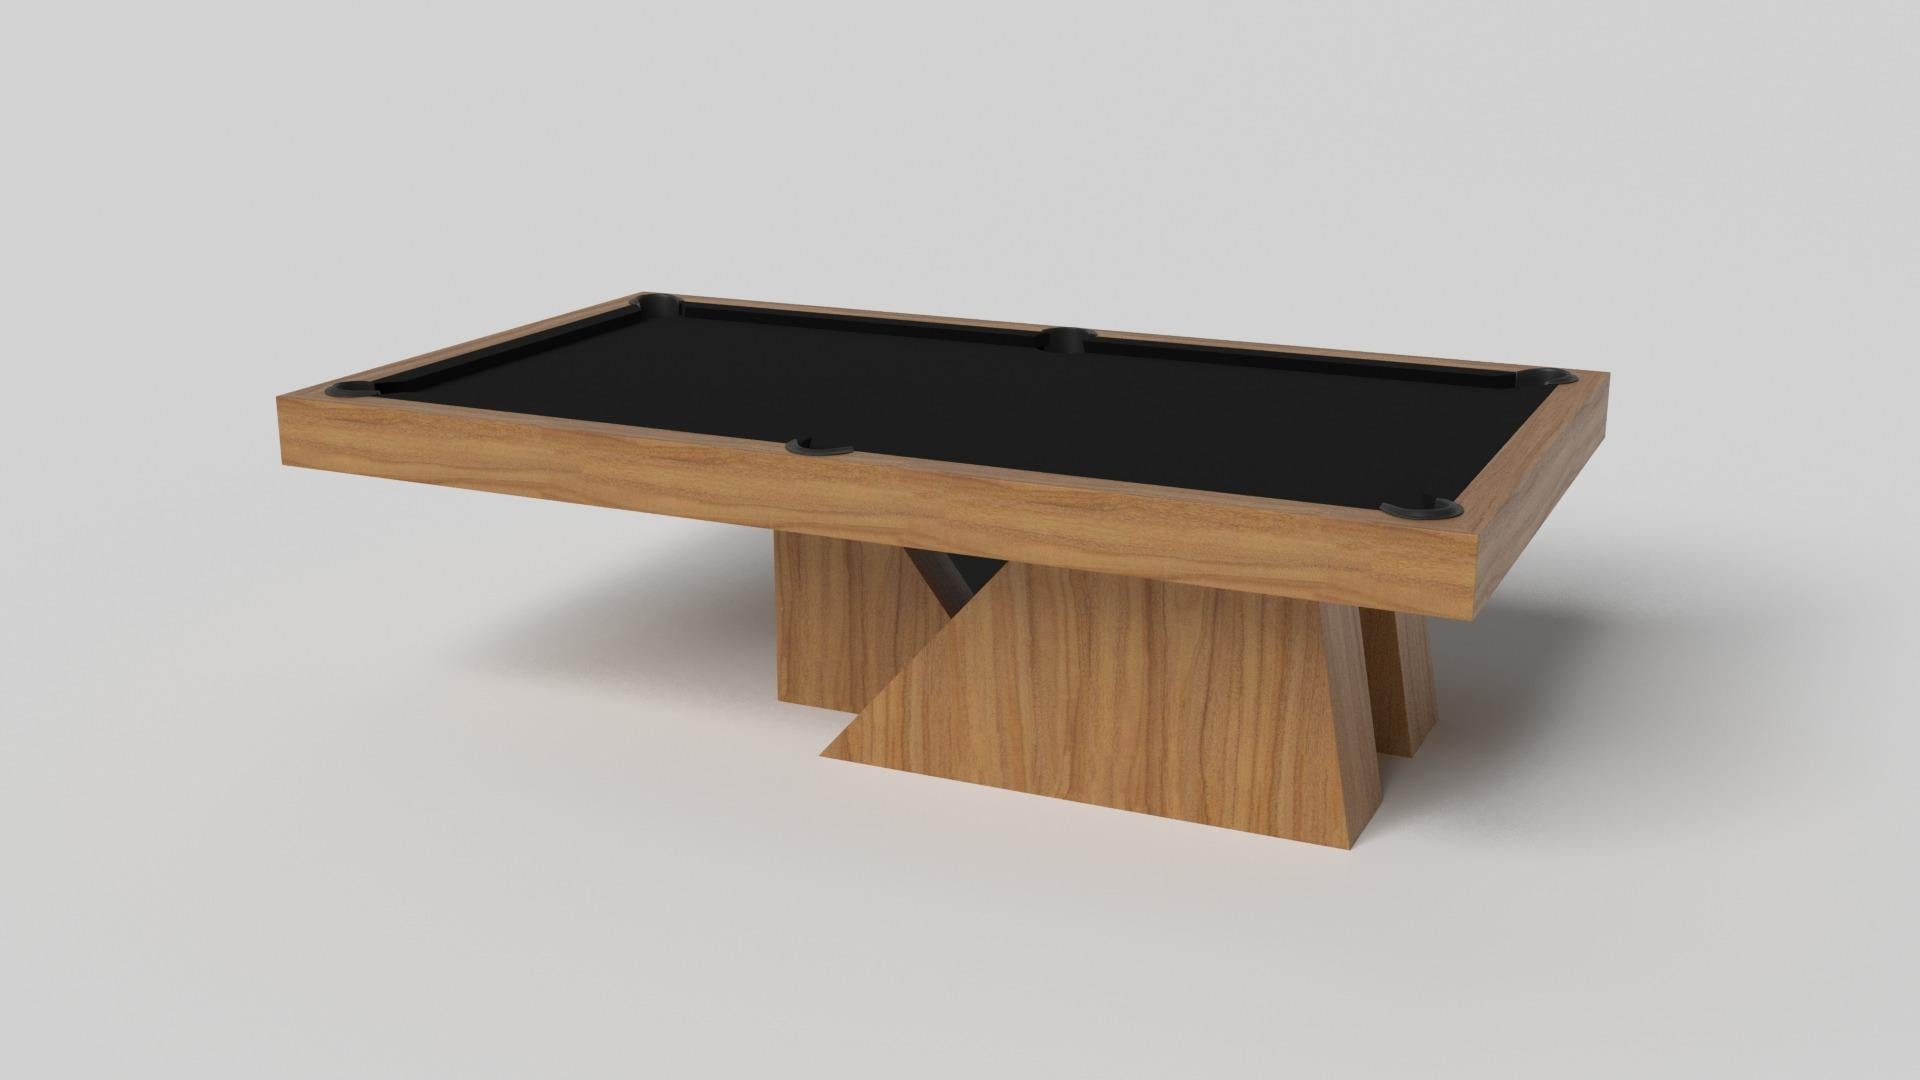 Ein asymmetrischer Sockel erzeugt eine frei schwebende Silhouette, die den Stilt-Billardtisch in Chrom mit Walnuss zu einer überzeugenden, zeitgenössischen Ergänzung für das moderne Zuhause macht. Dieser luxuriöse, handgefertigte Spieltisch aus